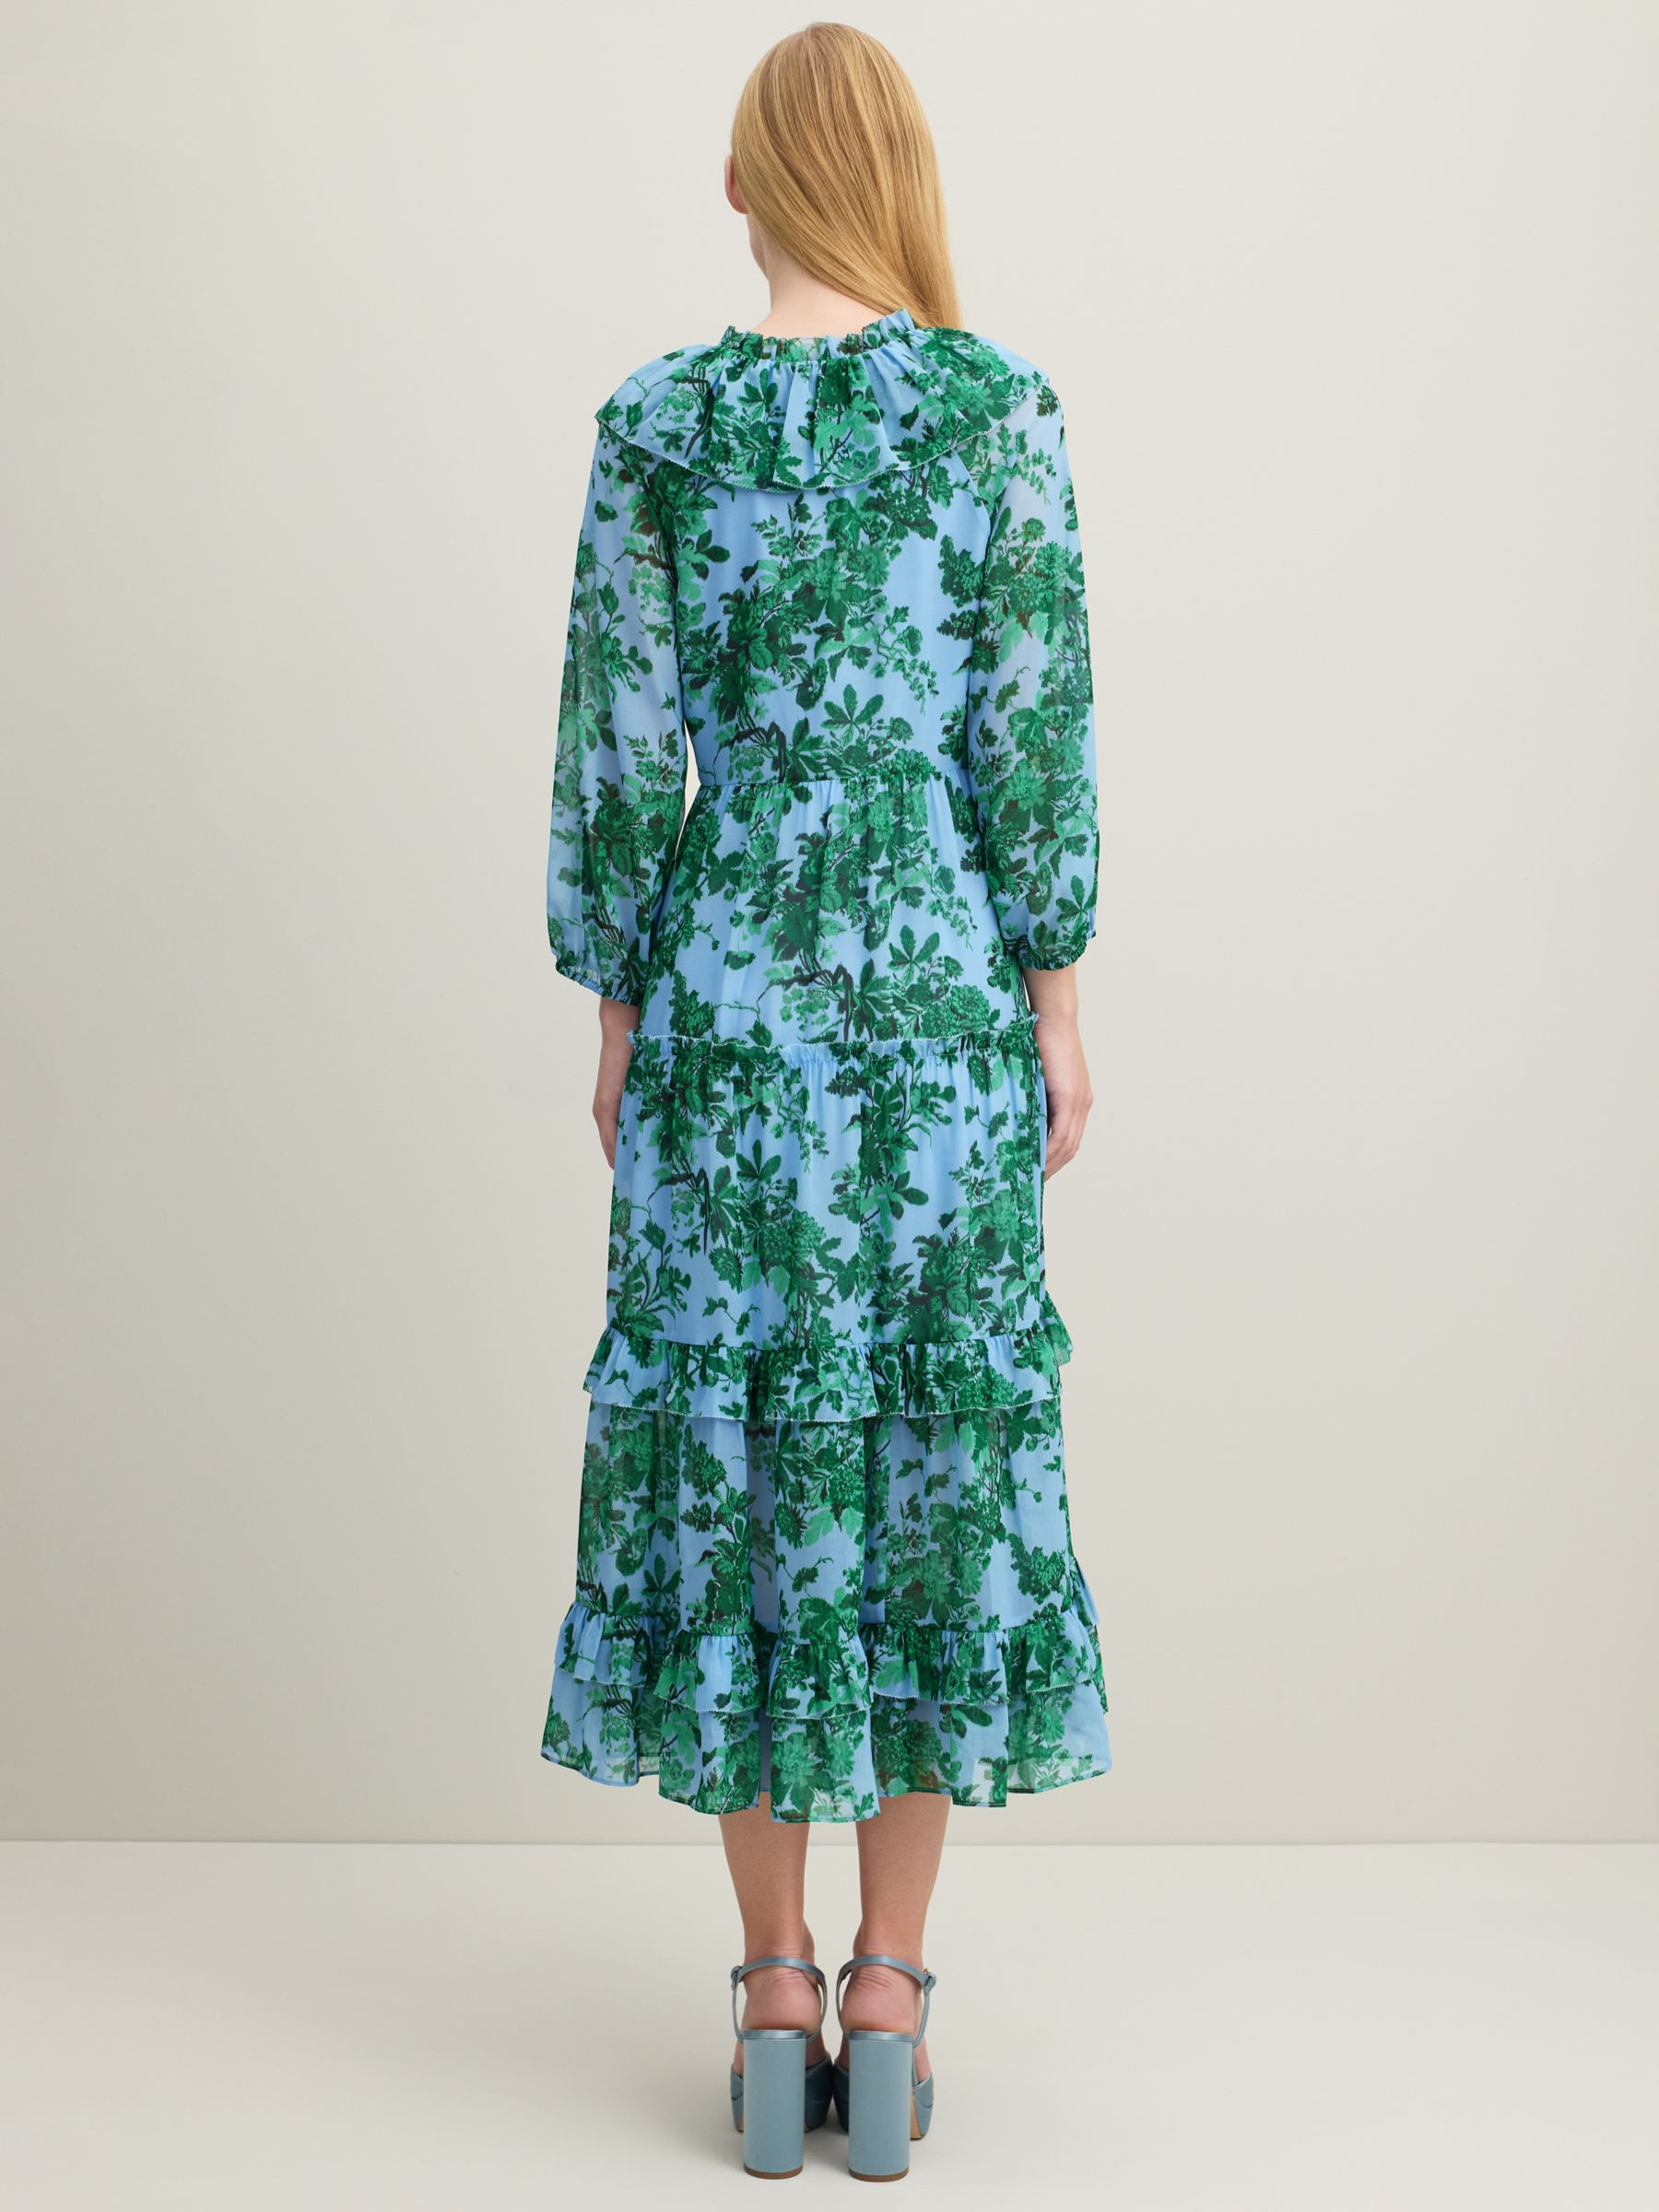 L.K.Bennett Eleanor Midi Floral Dress, Green/Blue, 6